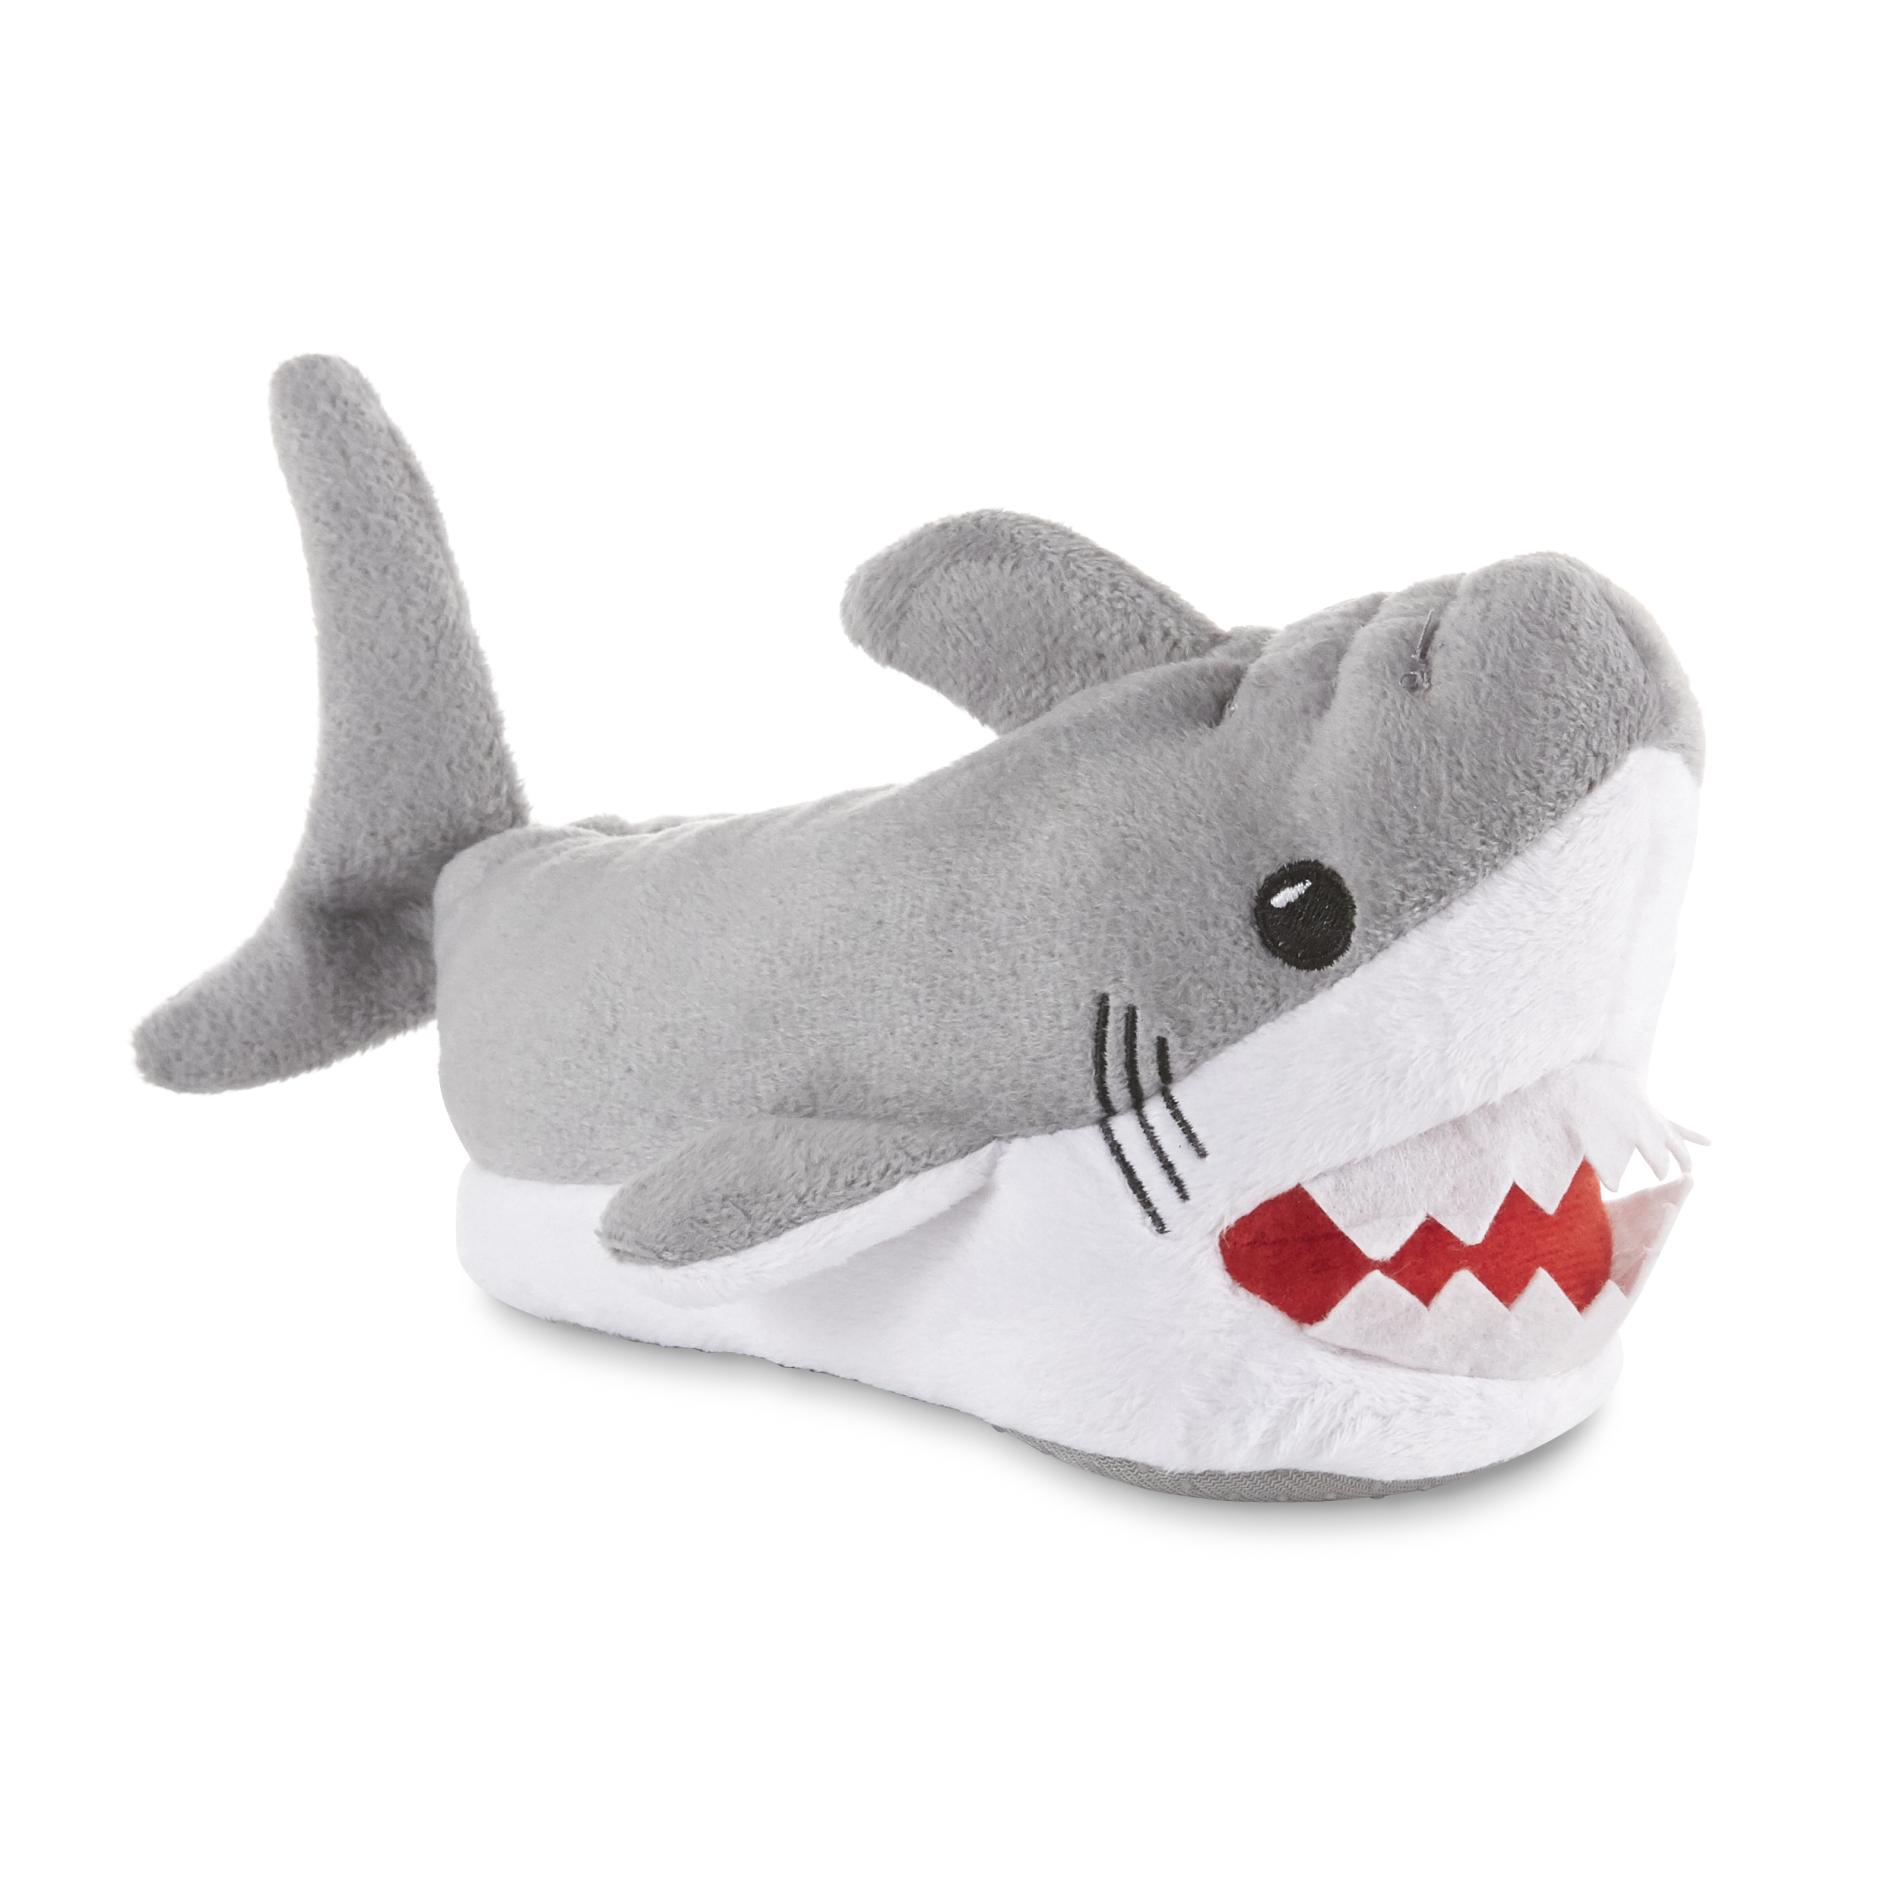 Toddler Boys' Shark Slipper - Gray